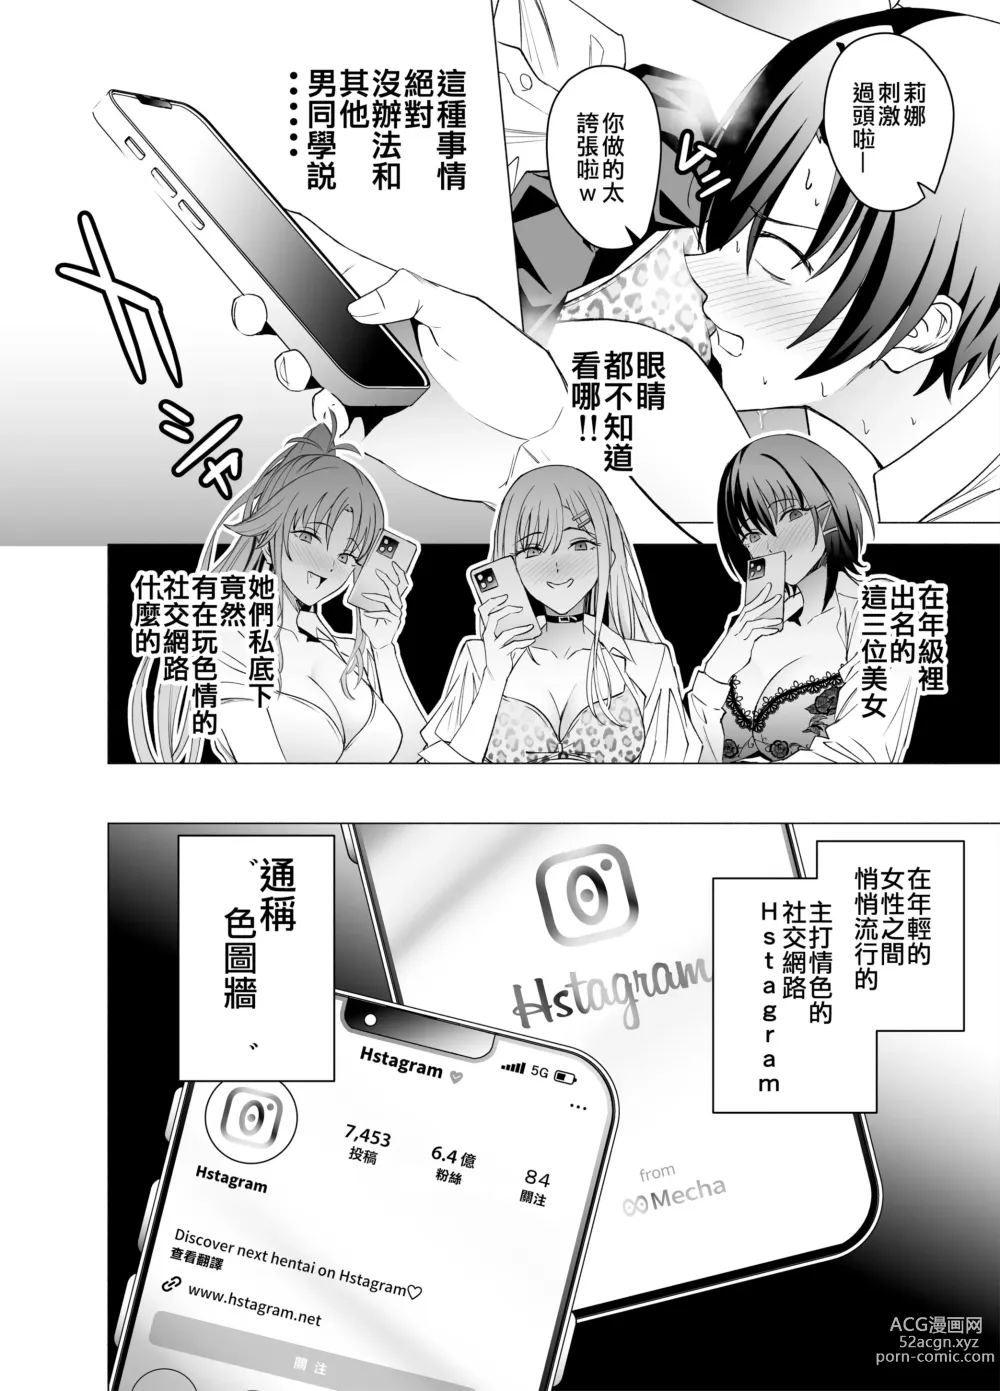 Page 6 of doujinshi 色情SNS的點贊量為目的而向你靠過來的辣妹的故事